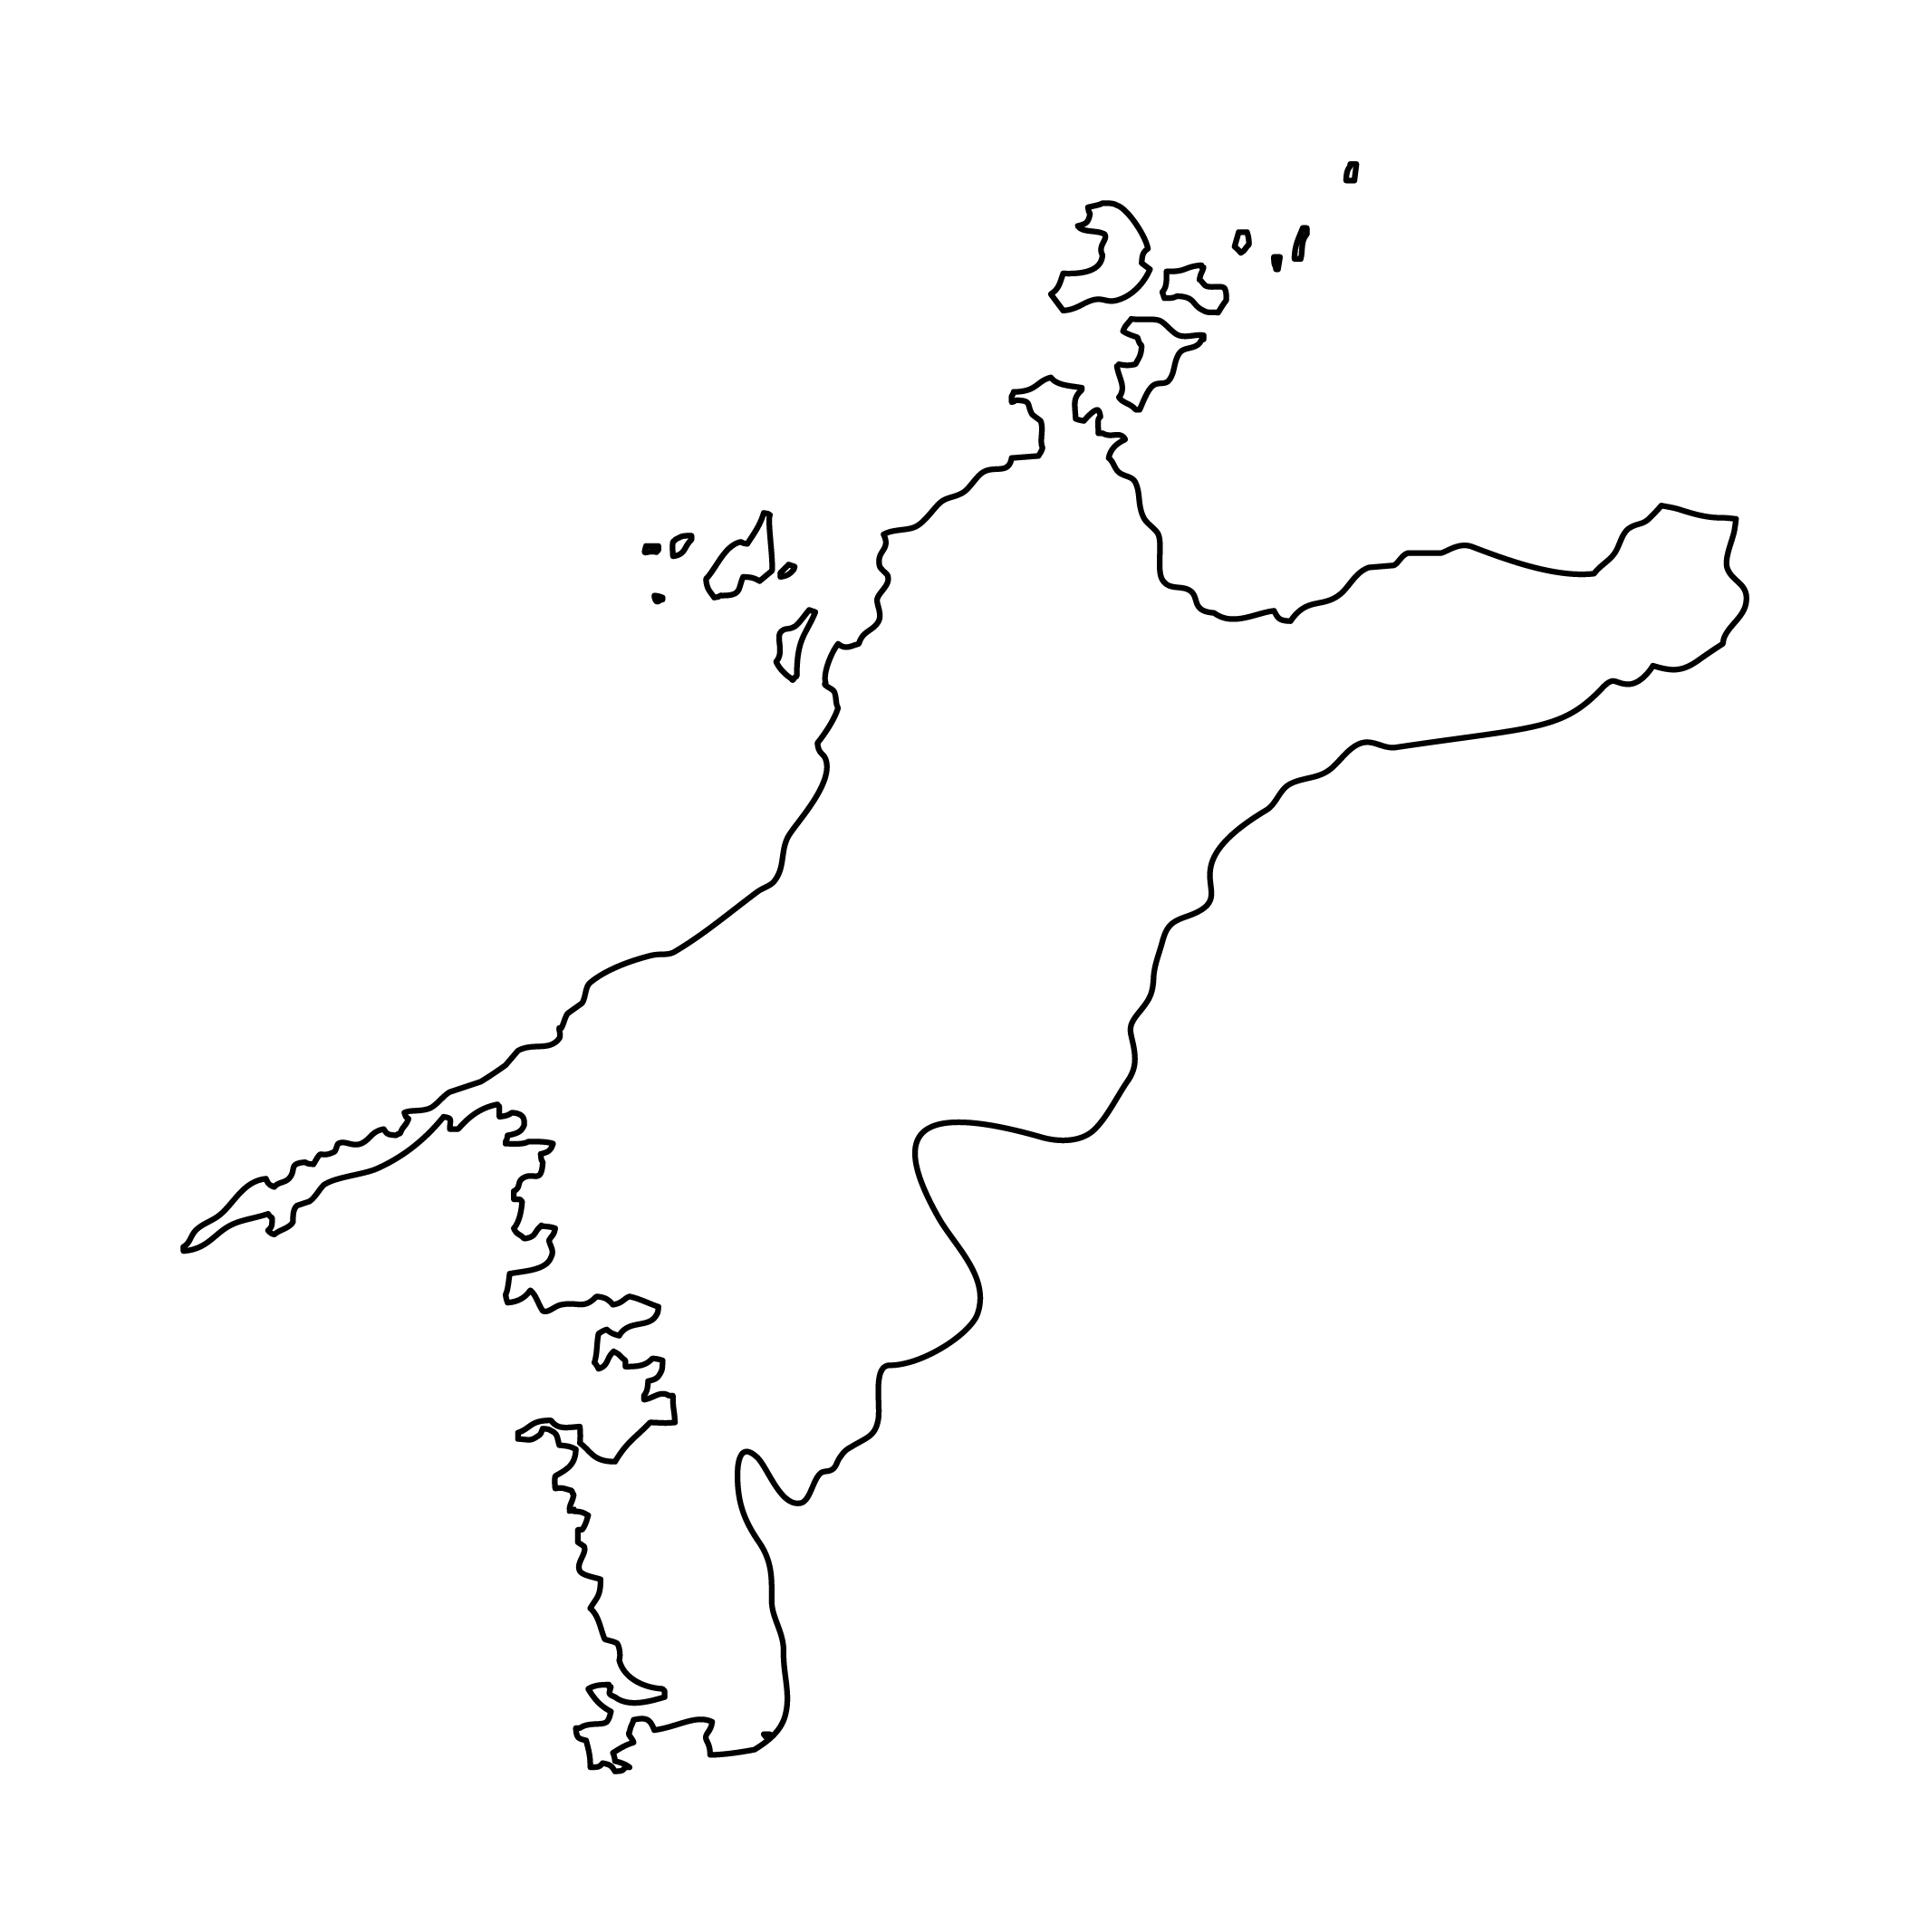 愛媛県の白地図イラスト無料素材集 県庁所在地 市町村名あり